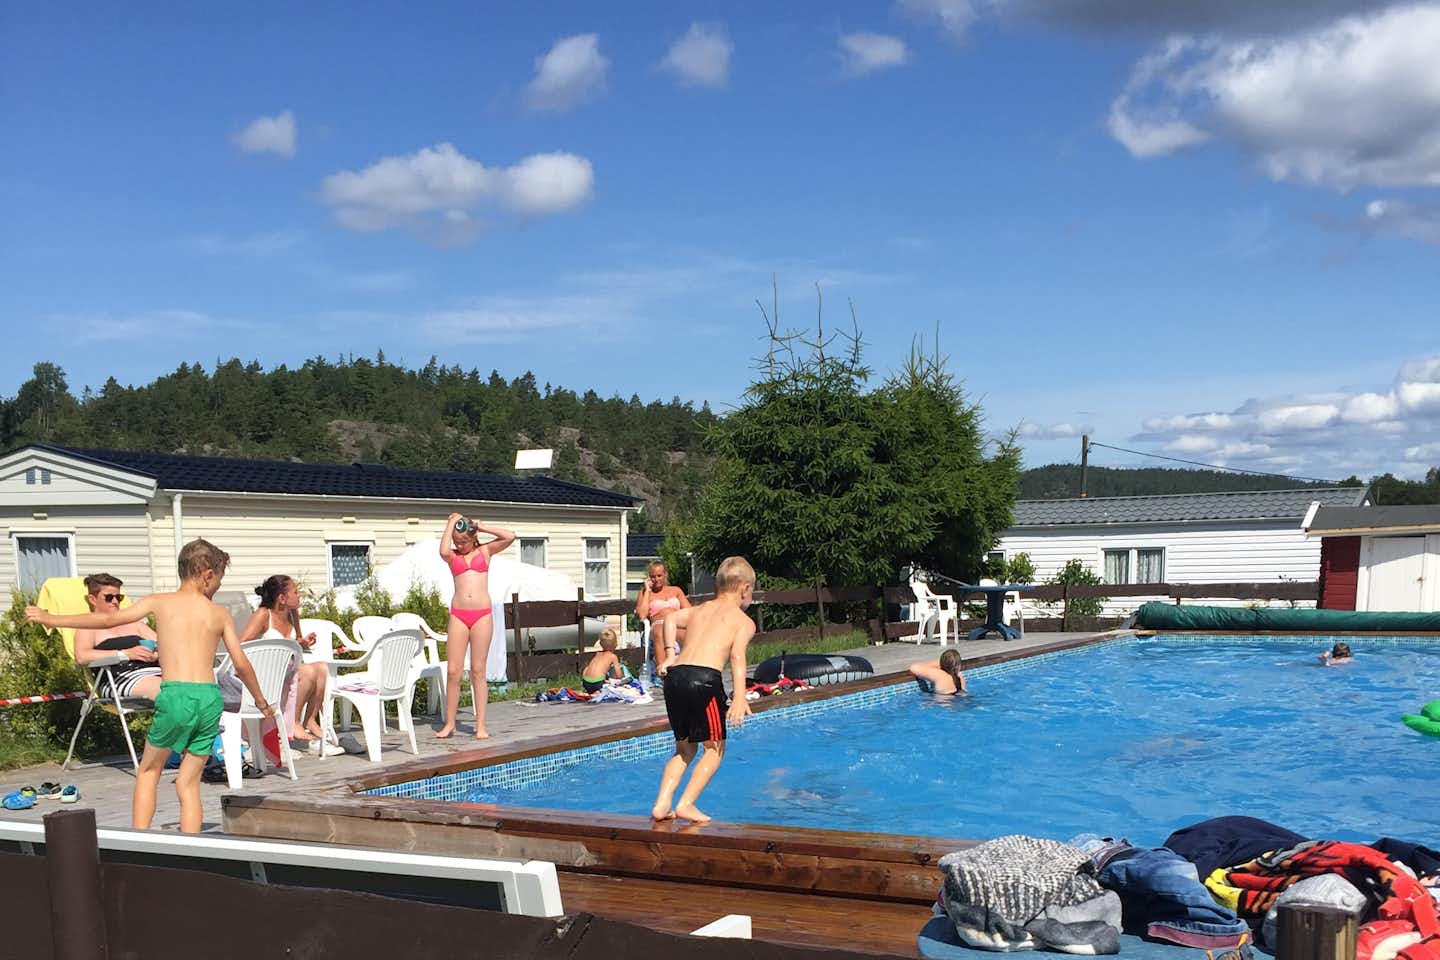 Ylserød Camping - Gäste beim Baden im Pool auf dem Campingplatz